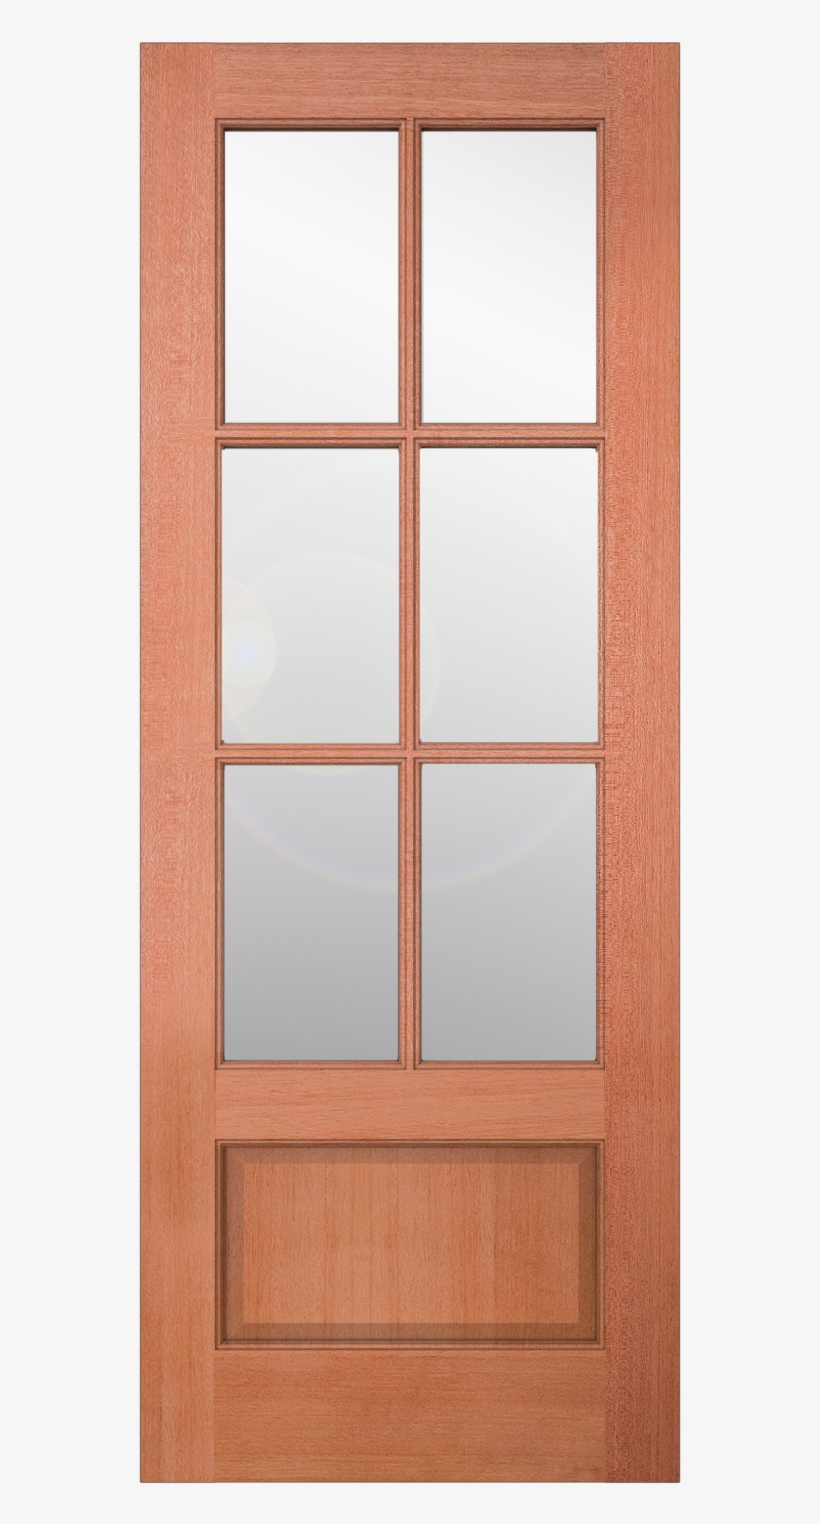 Authentic Wood Glass Panel Exterior Door - Sliding Door, transparent png #1815534